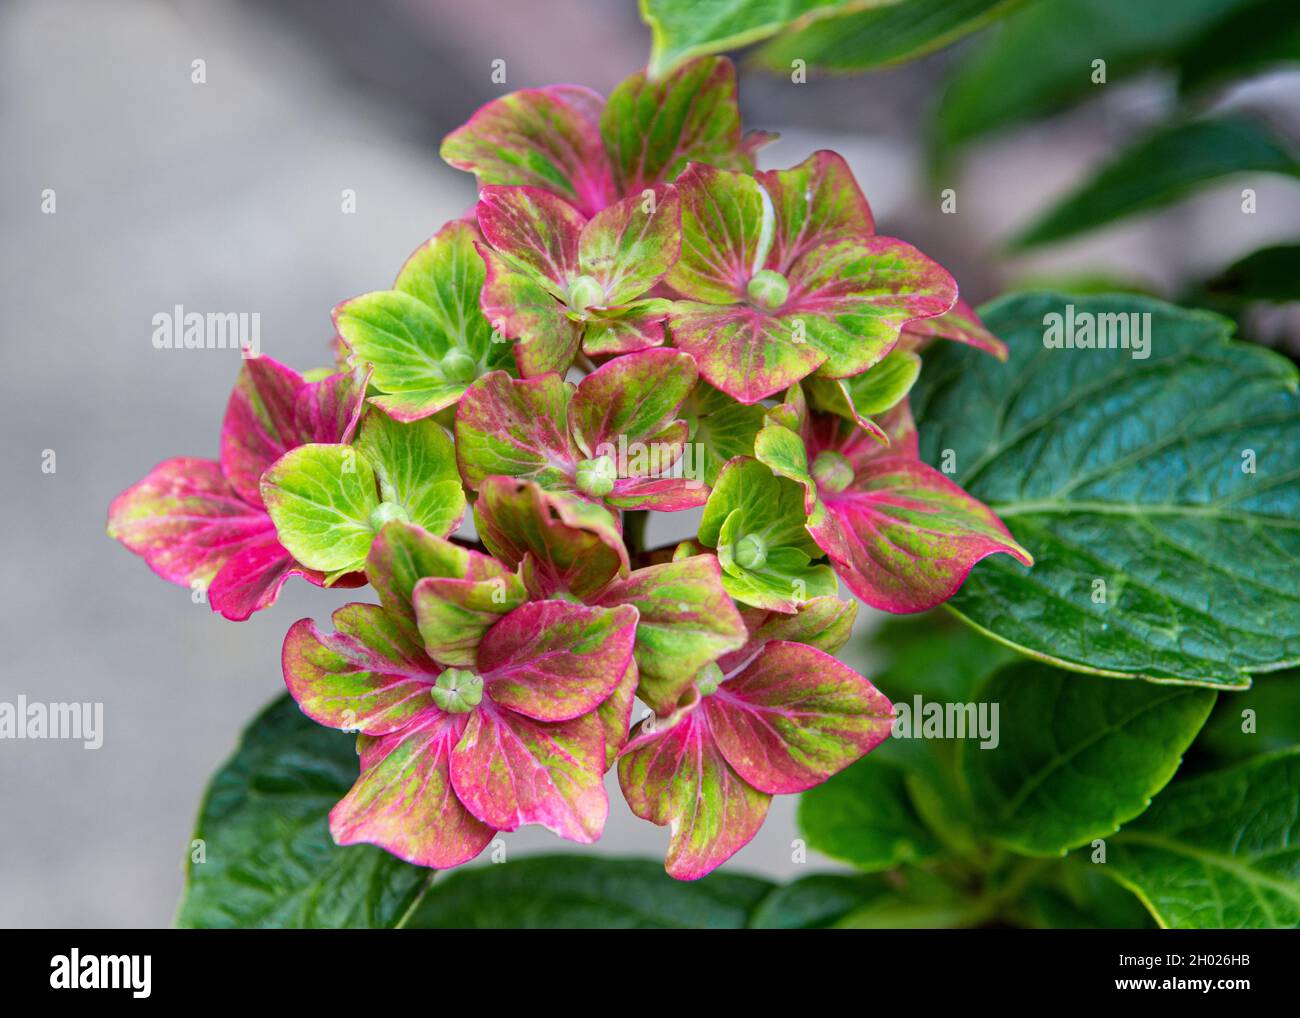 Schöne lebendige Blumen von Hydrangea, Sorte 'Glam Rock' Stockfoto